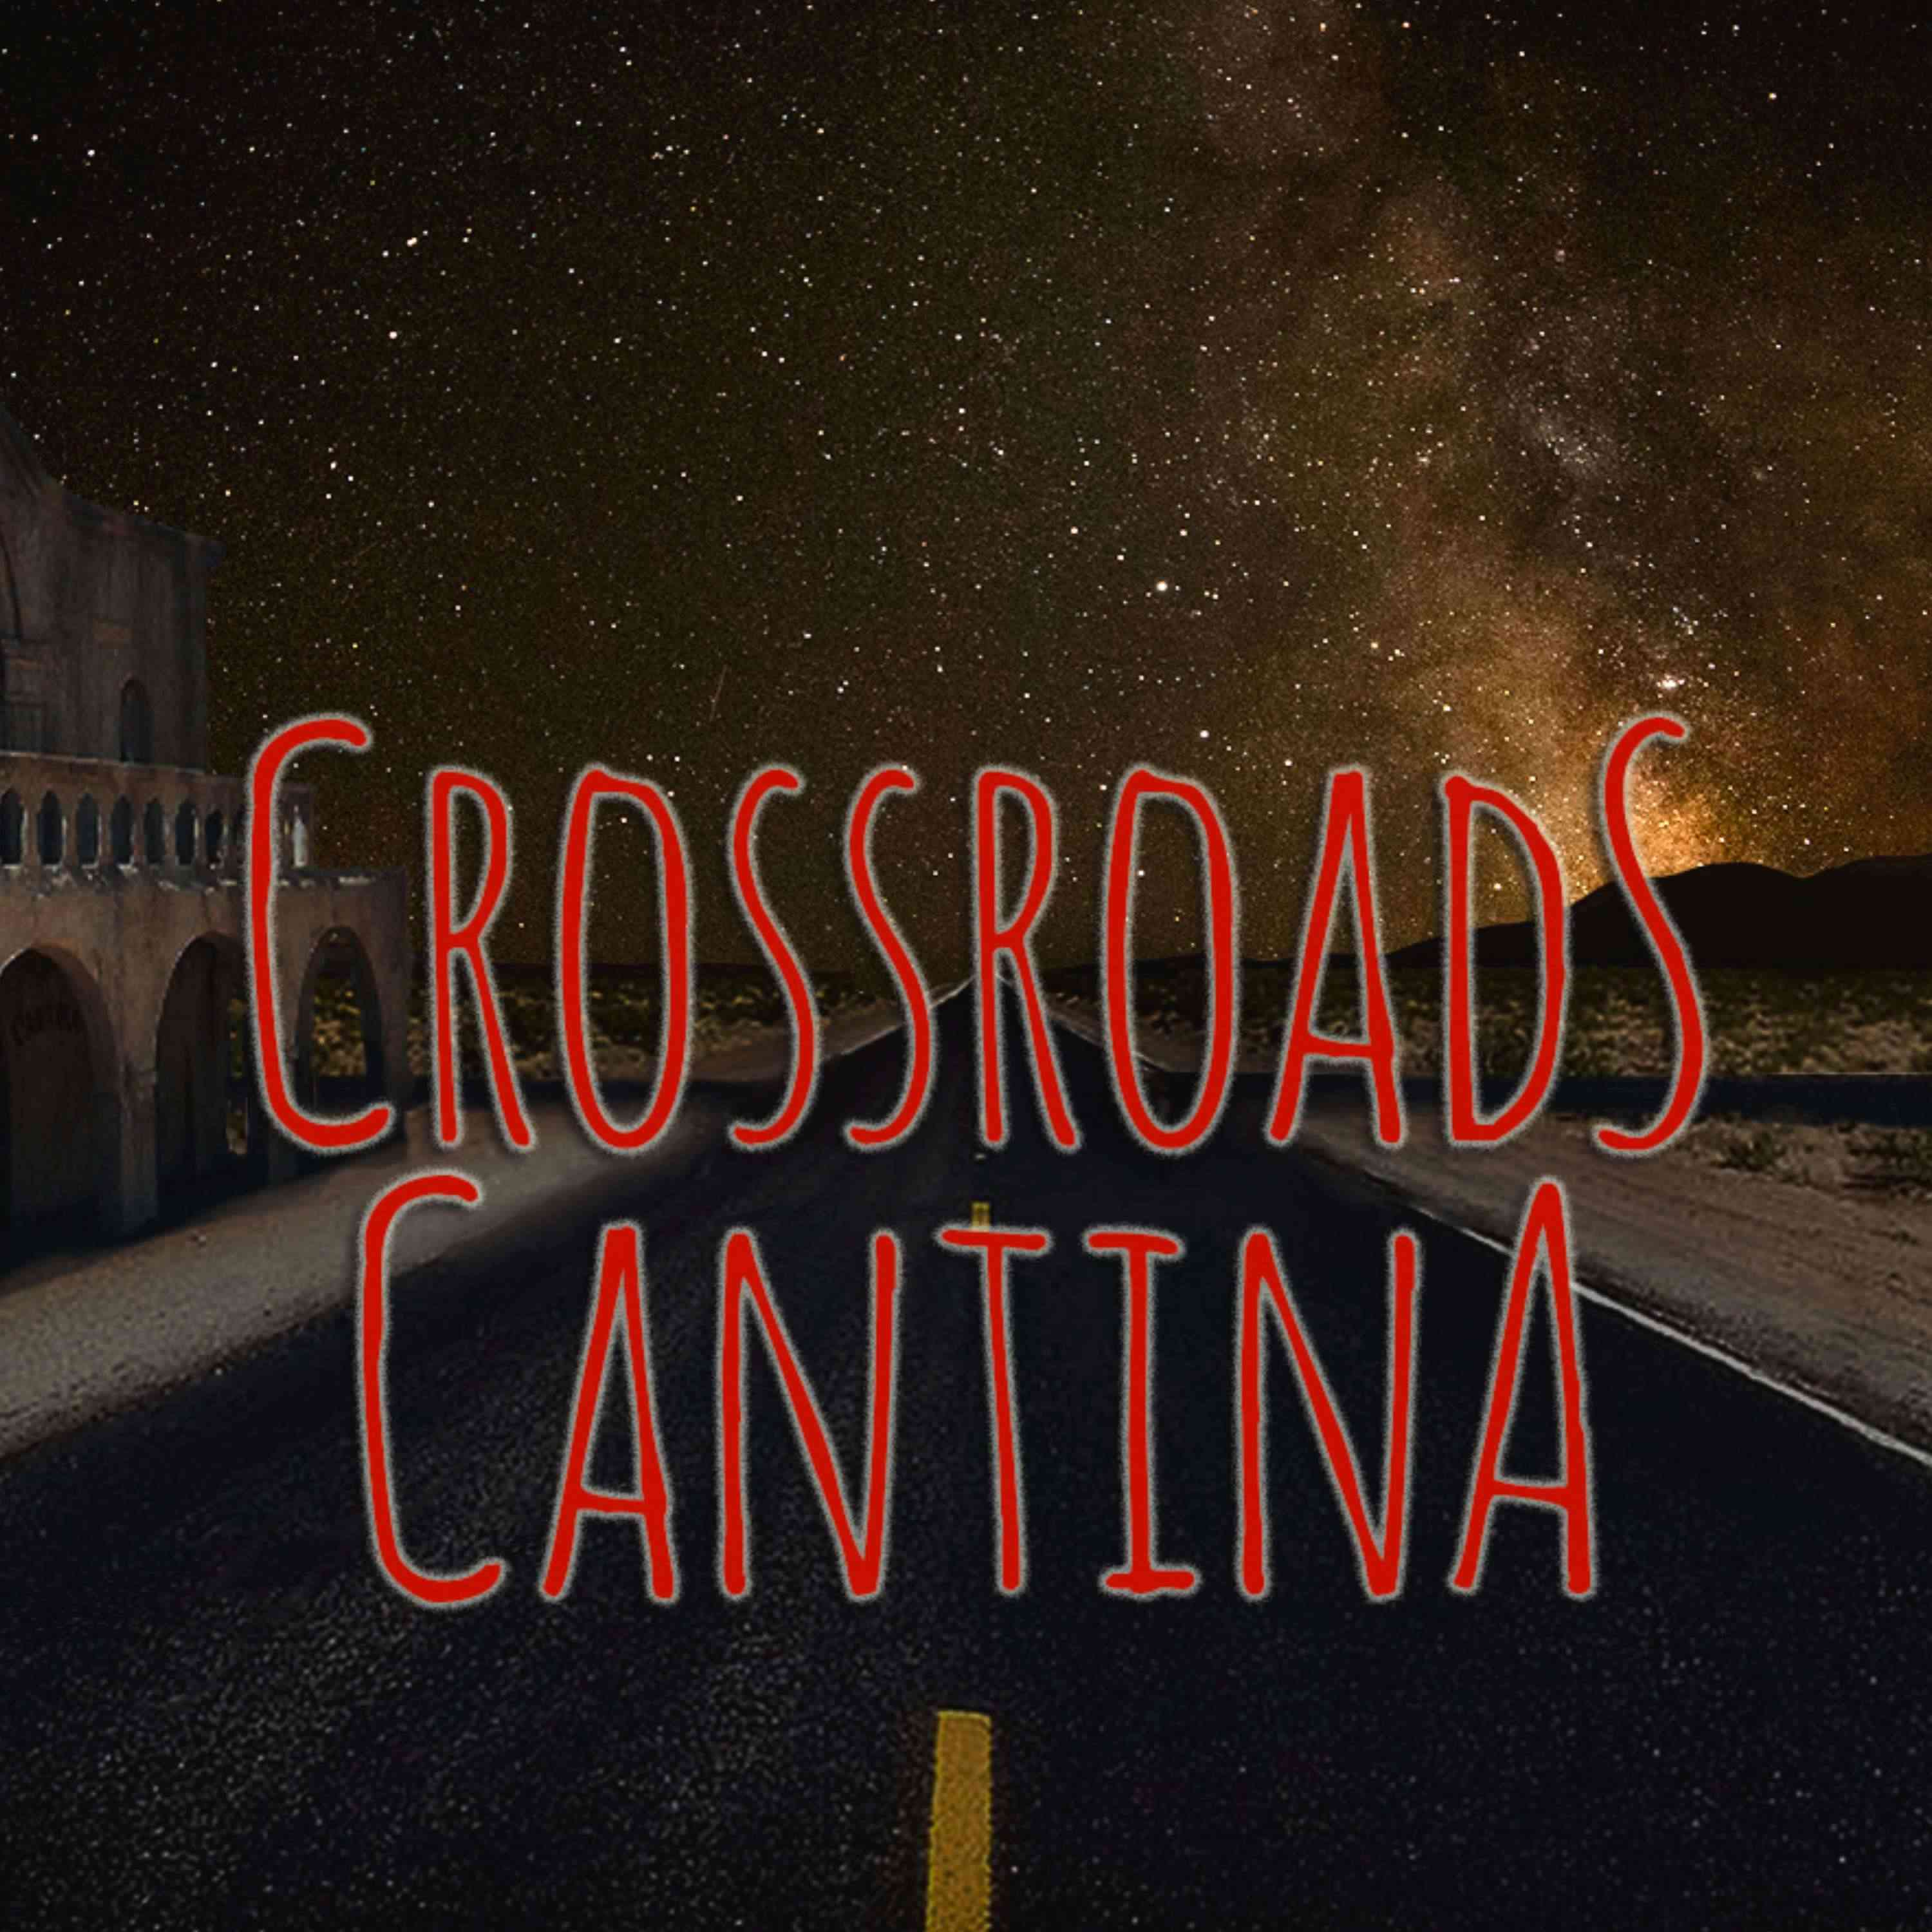 Show artwork for Crossroads Cantina